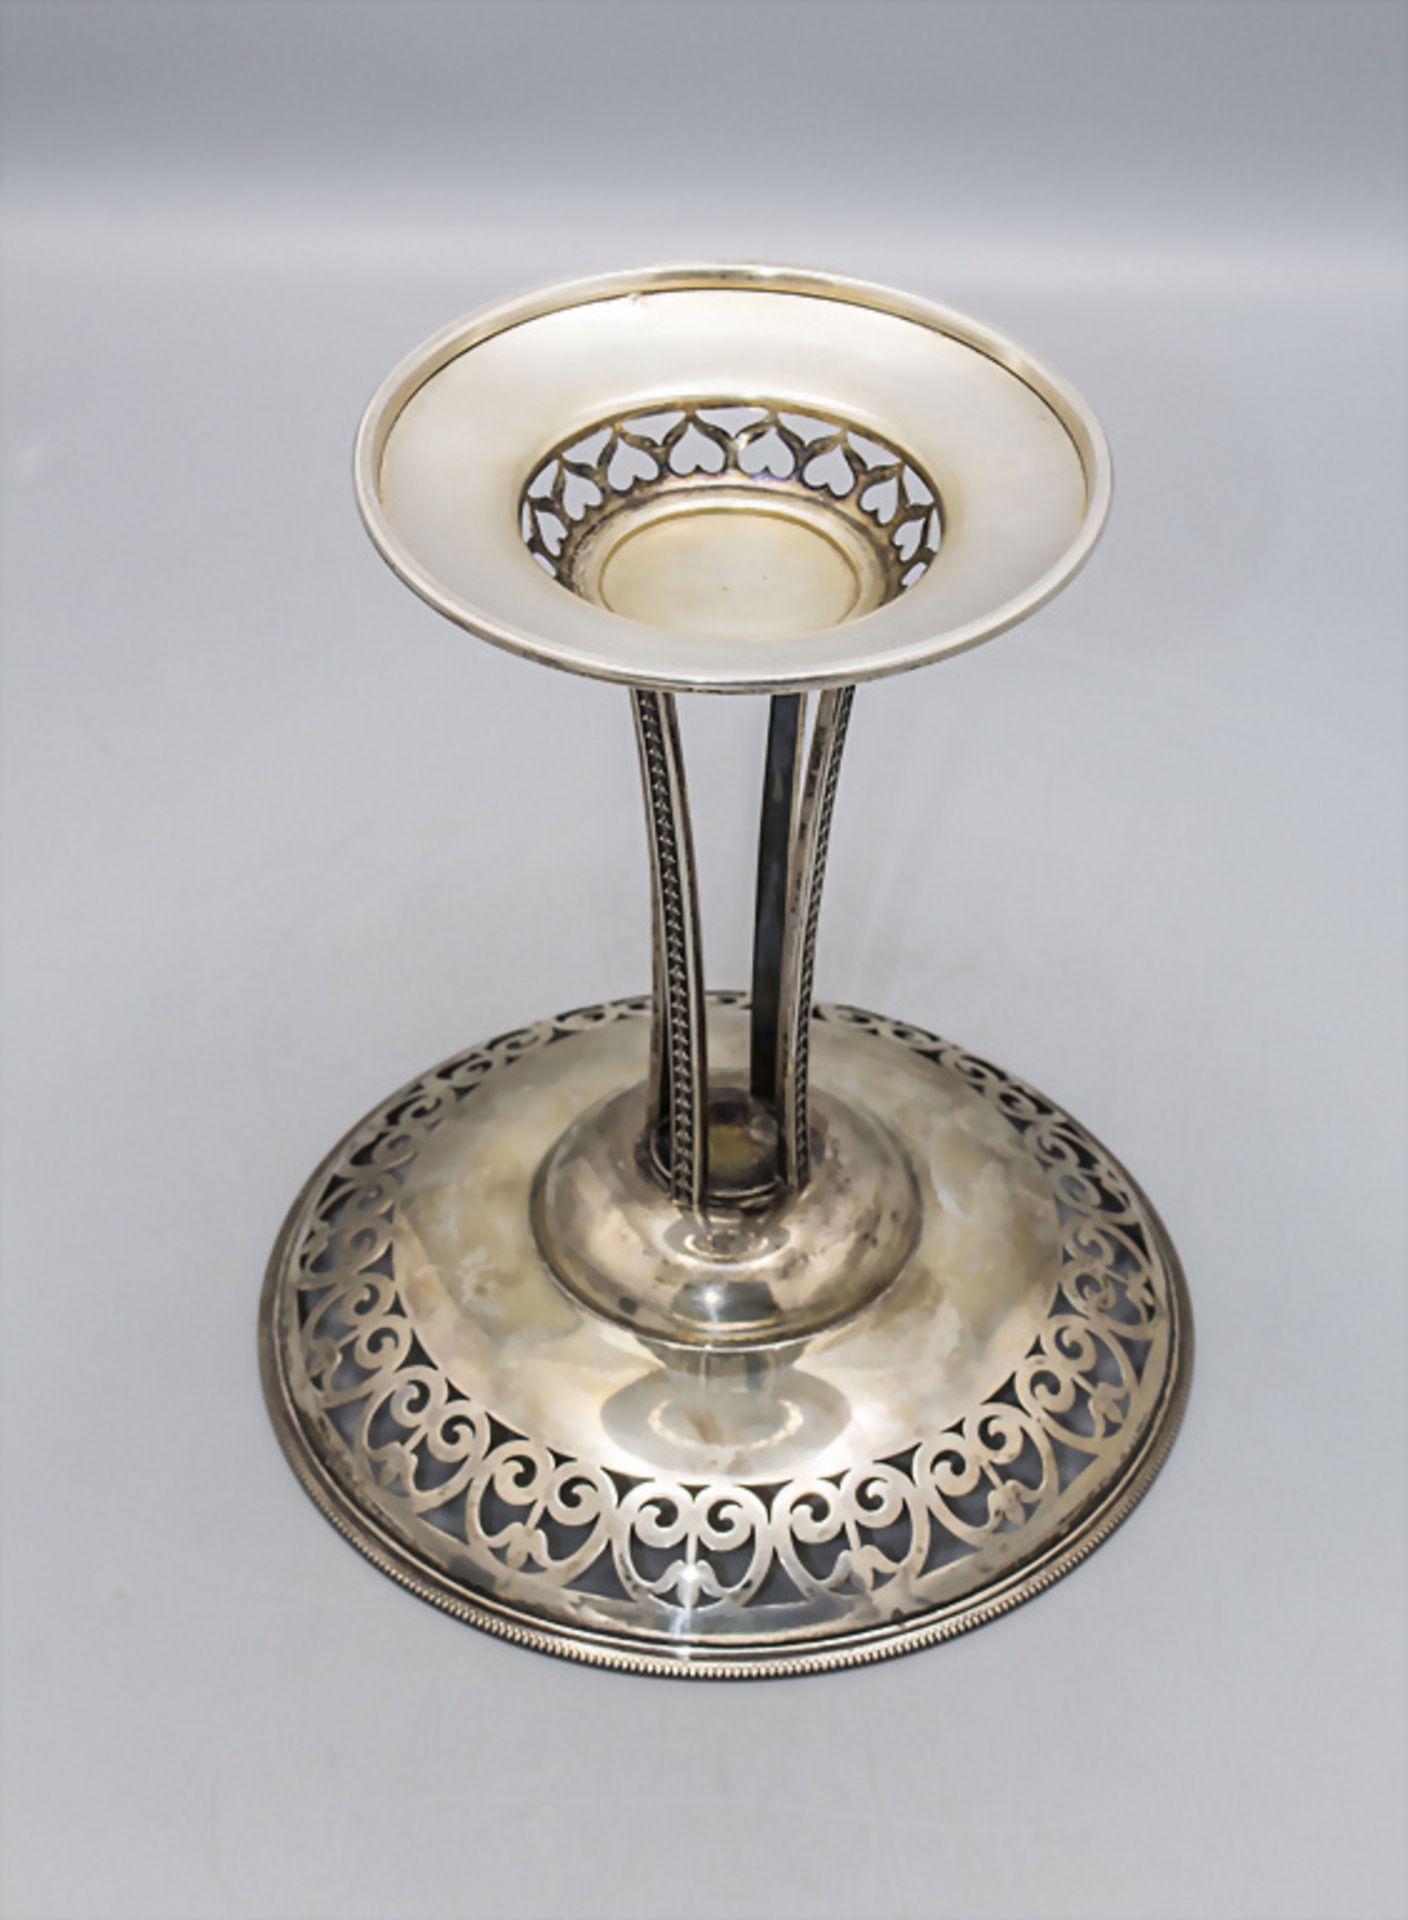 Jugendstil Obstschale / An Art Nouveau silver fruit bowl, Wien, um 1900 - Image 3 of 4